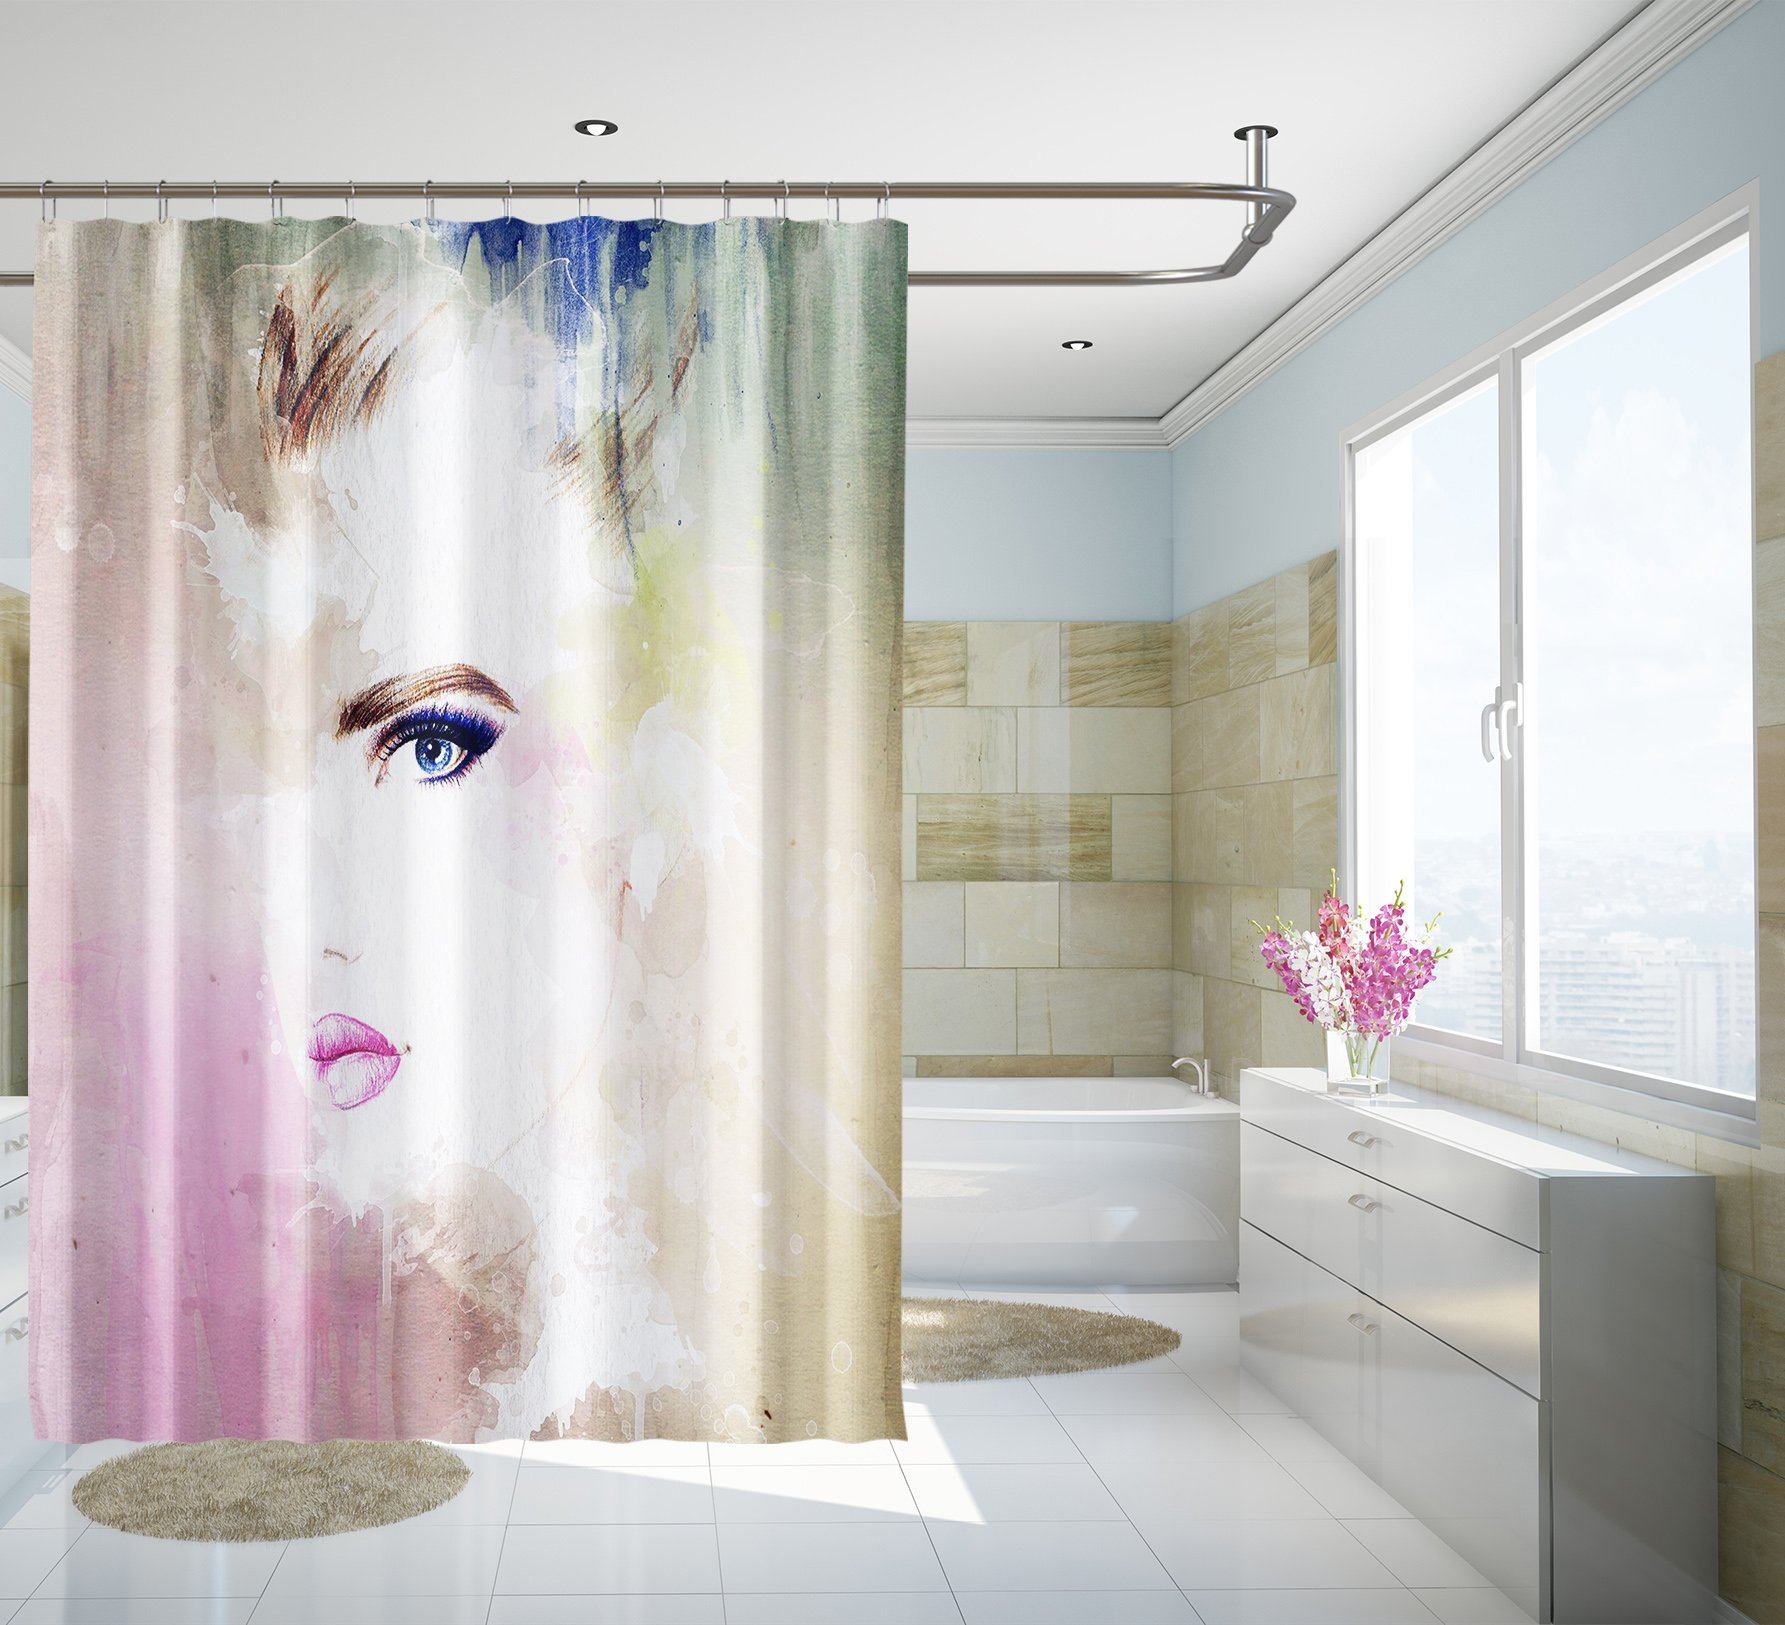 3D Graffiti Woman 083 Shower Curtain 3D Shower Curtain AJ Creativity Home 